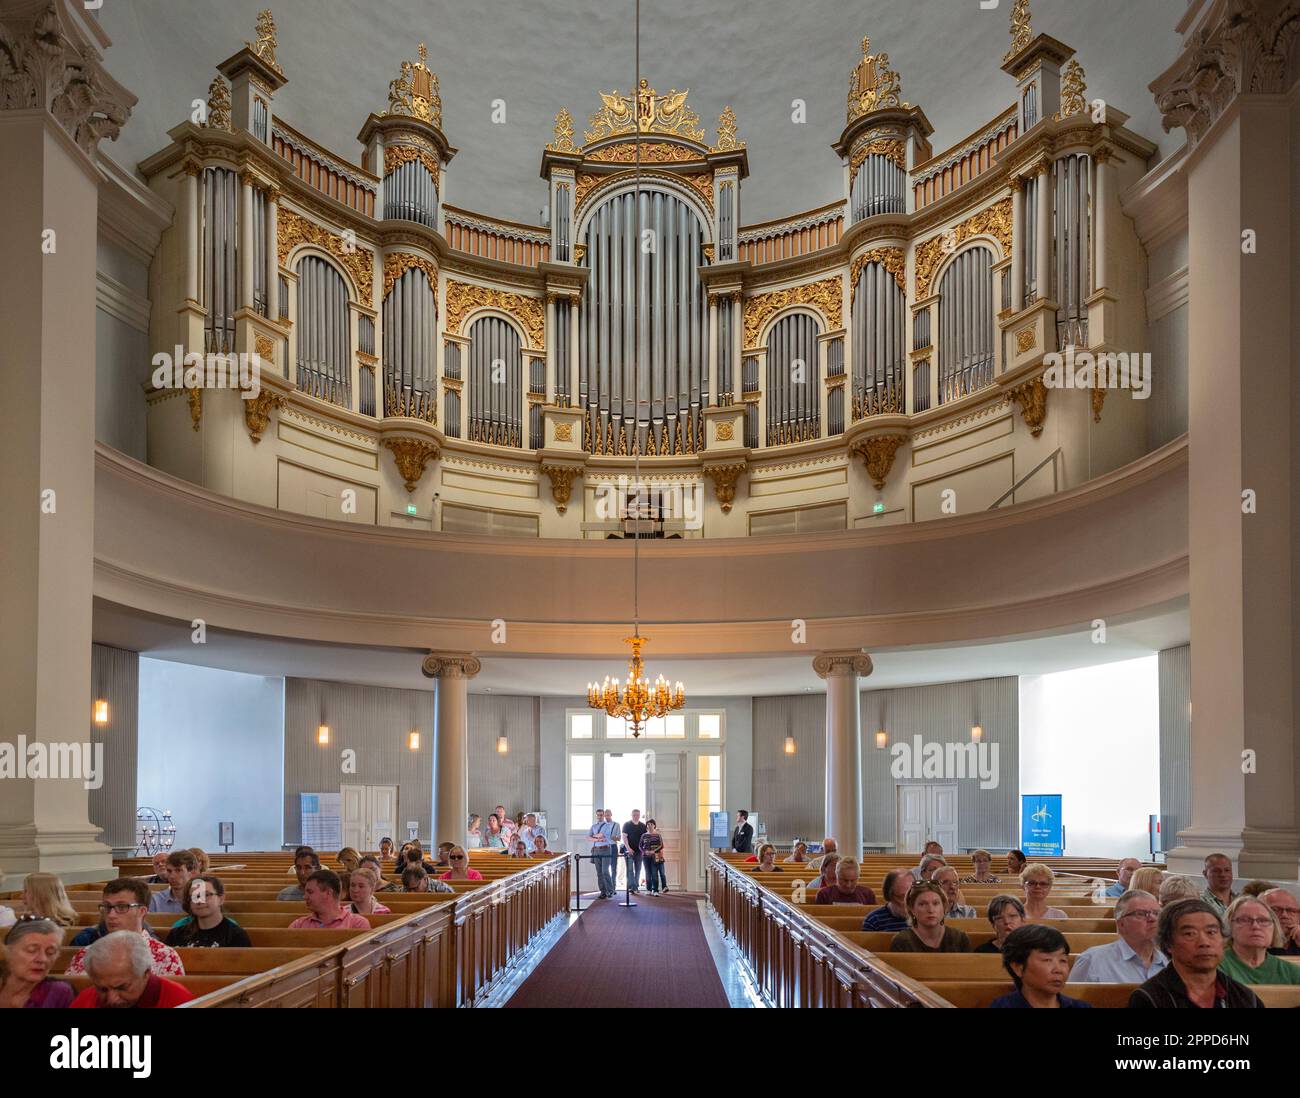 Personnes attendant un récital de concert d'orgue dans la cathédrale luthérienne évangélique finlandaise du diocèse d'Helsinki, en Finlande. Banque D'Images